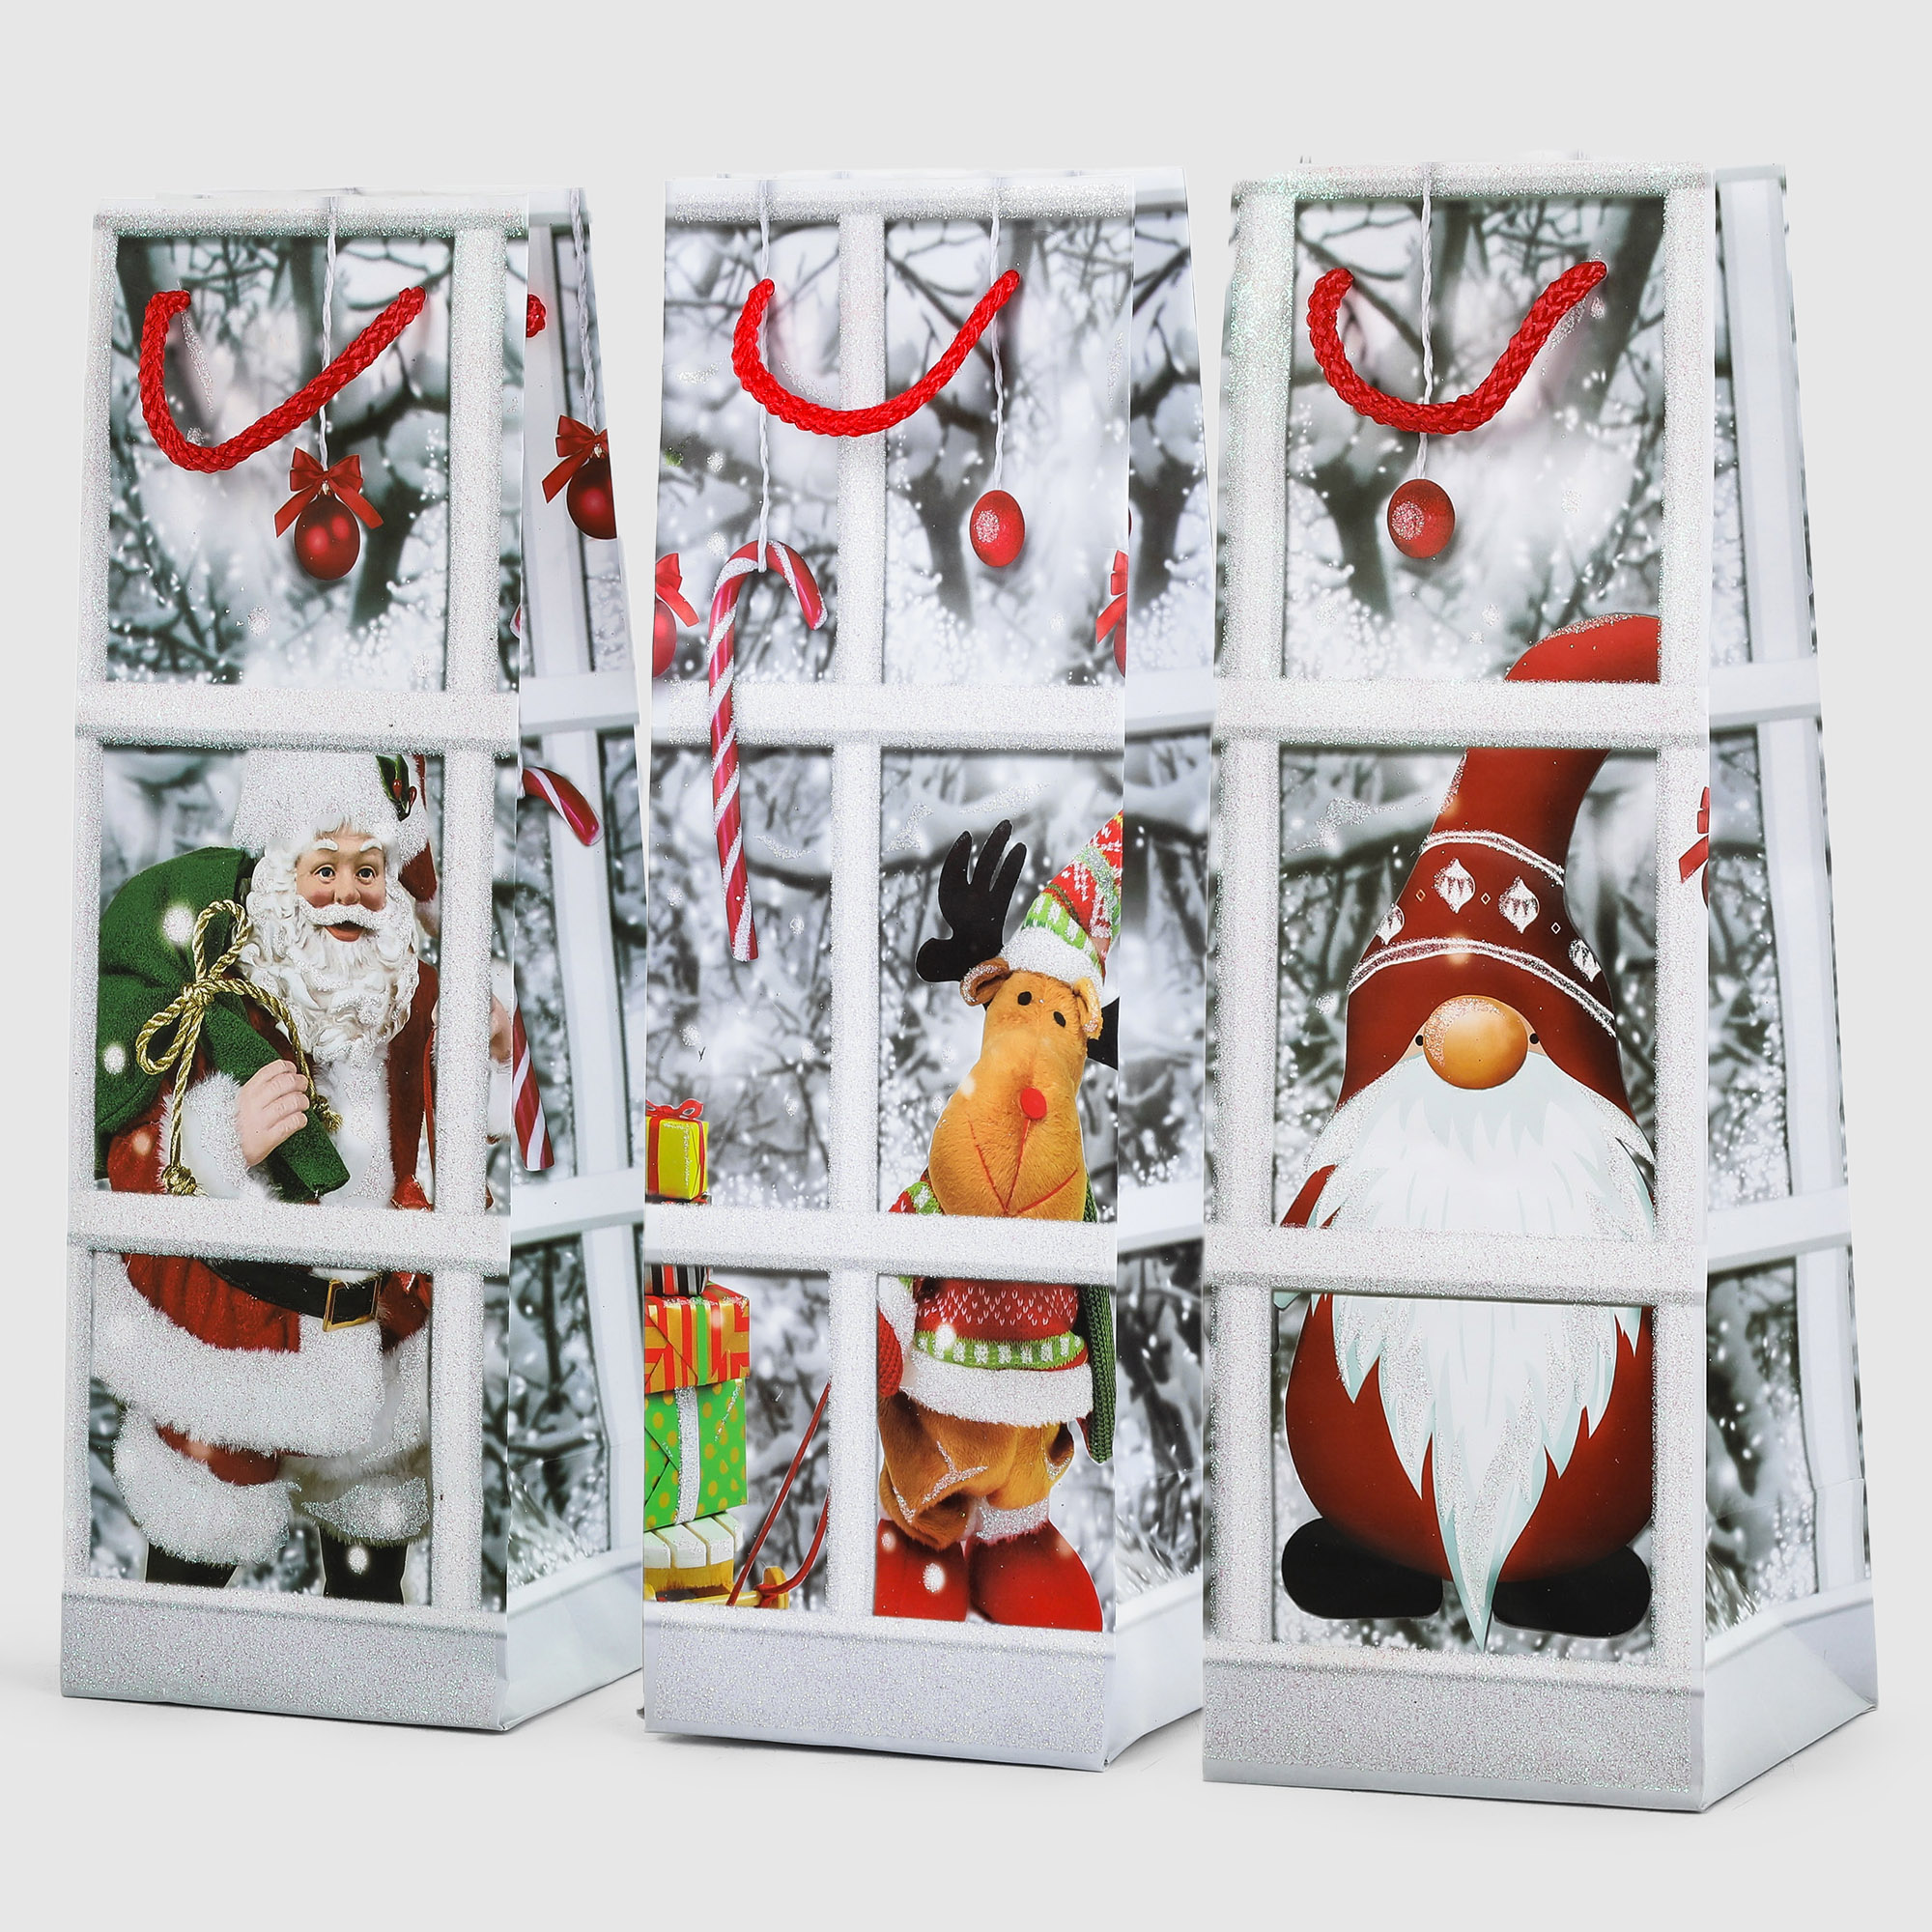 Пакет подарочный Due Esse Christmas пейзаж 36x11x12 см в ассортименте подарочный пакет домашняя кухня пасхальный 2 шт в ассортименте